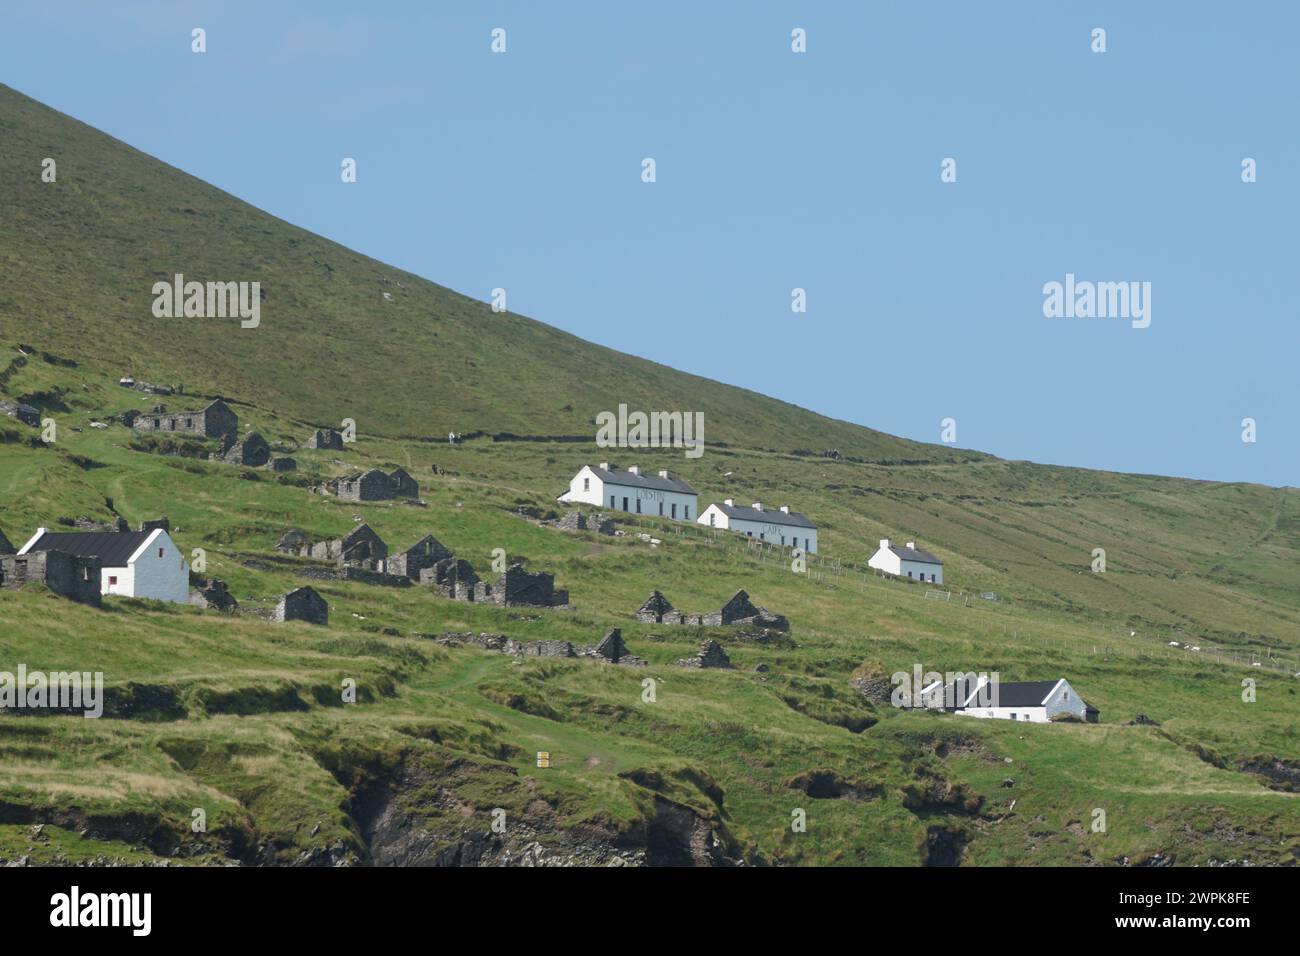 El paisaje urbano de Dingle en una ladera verde de la montaña, Irlanda Foto de stock